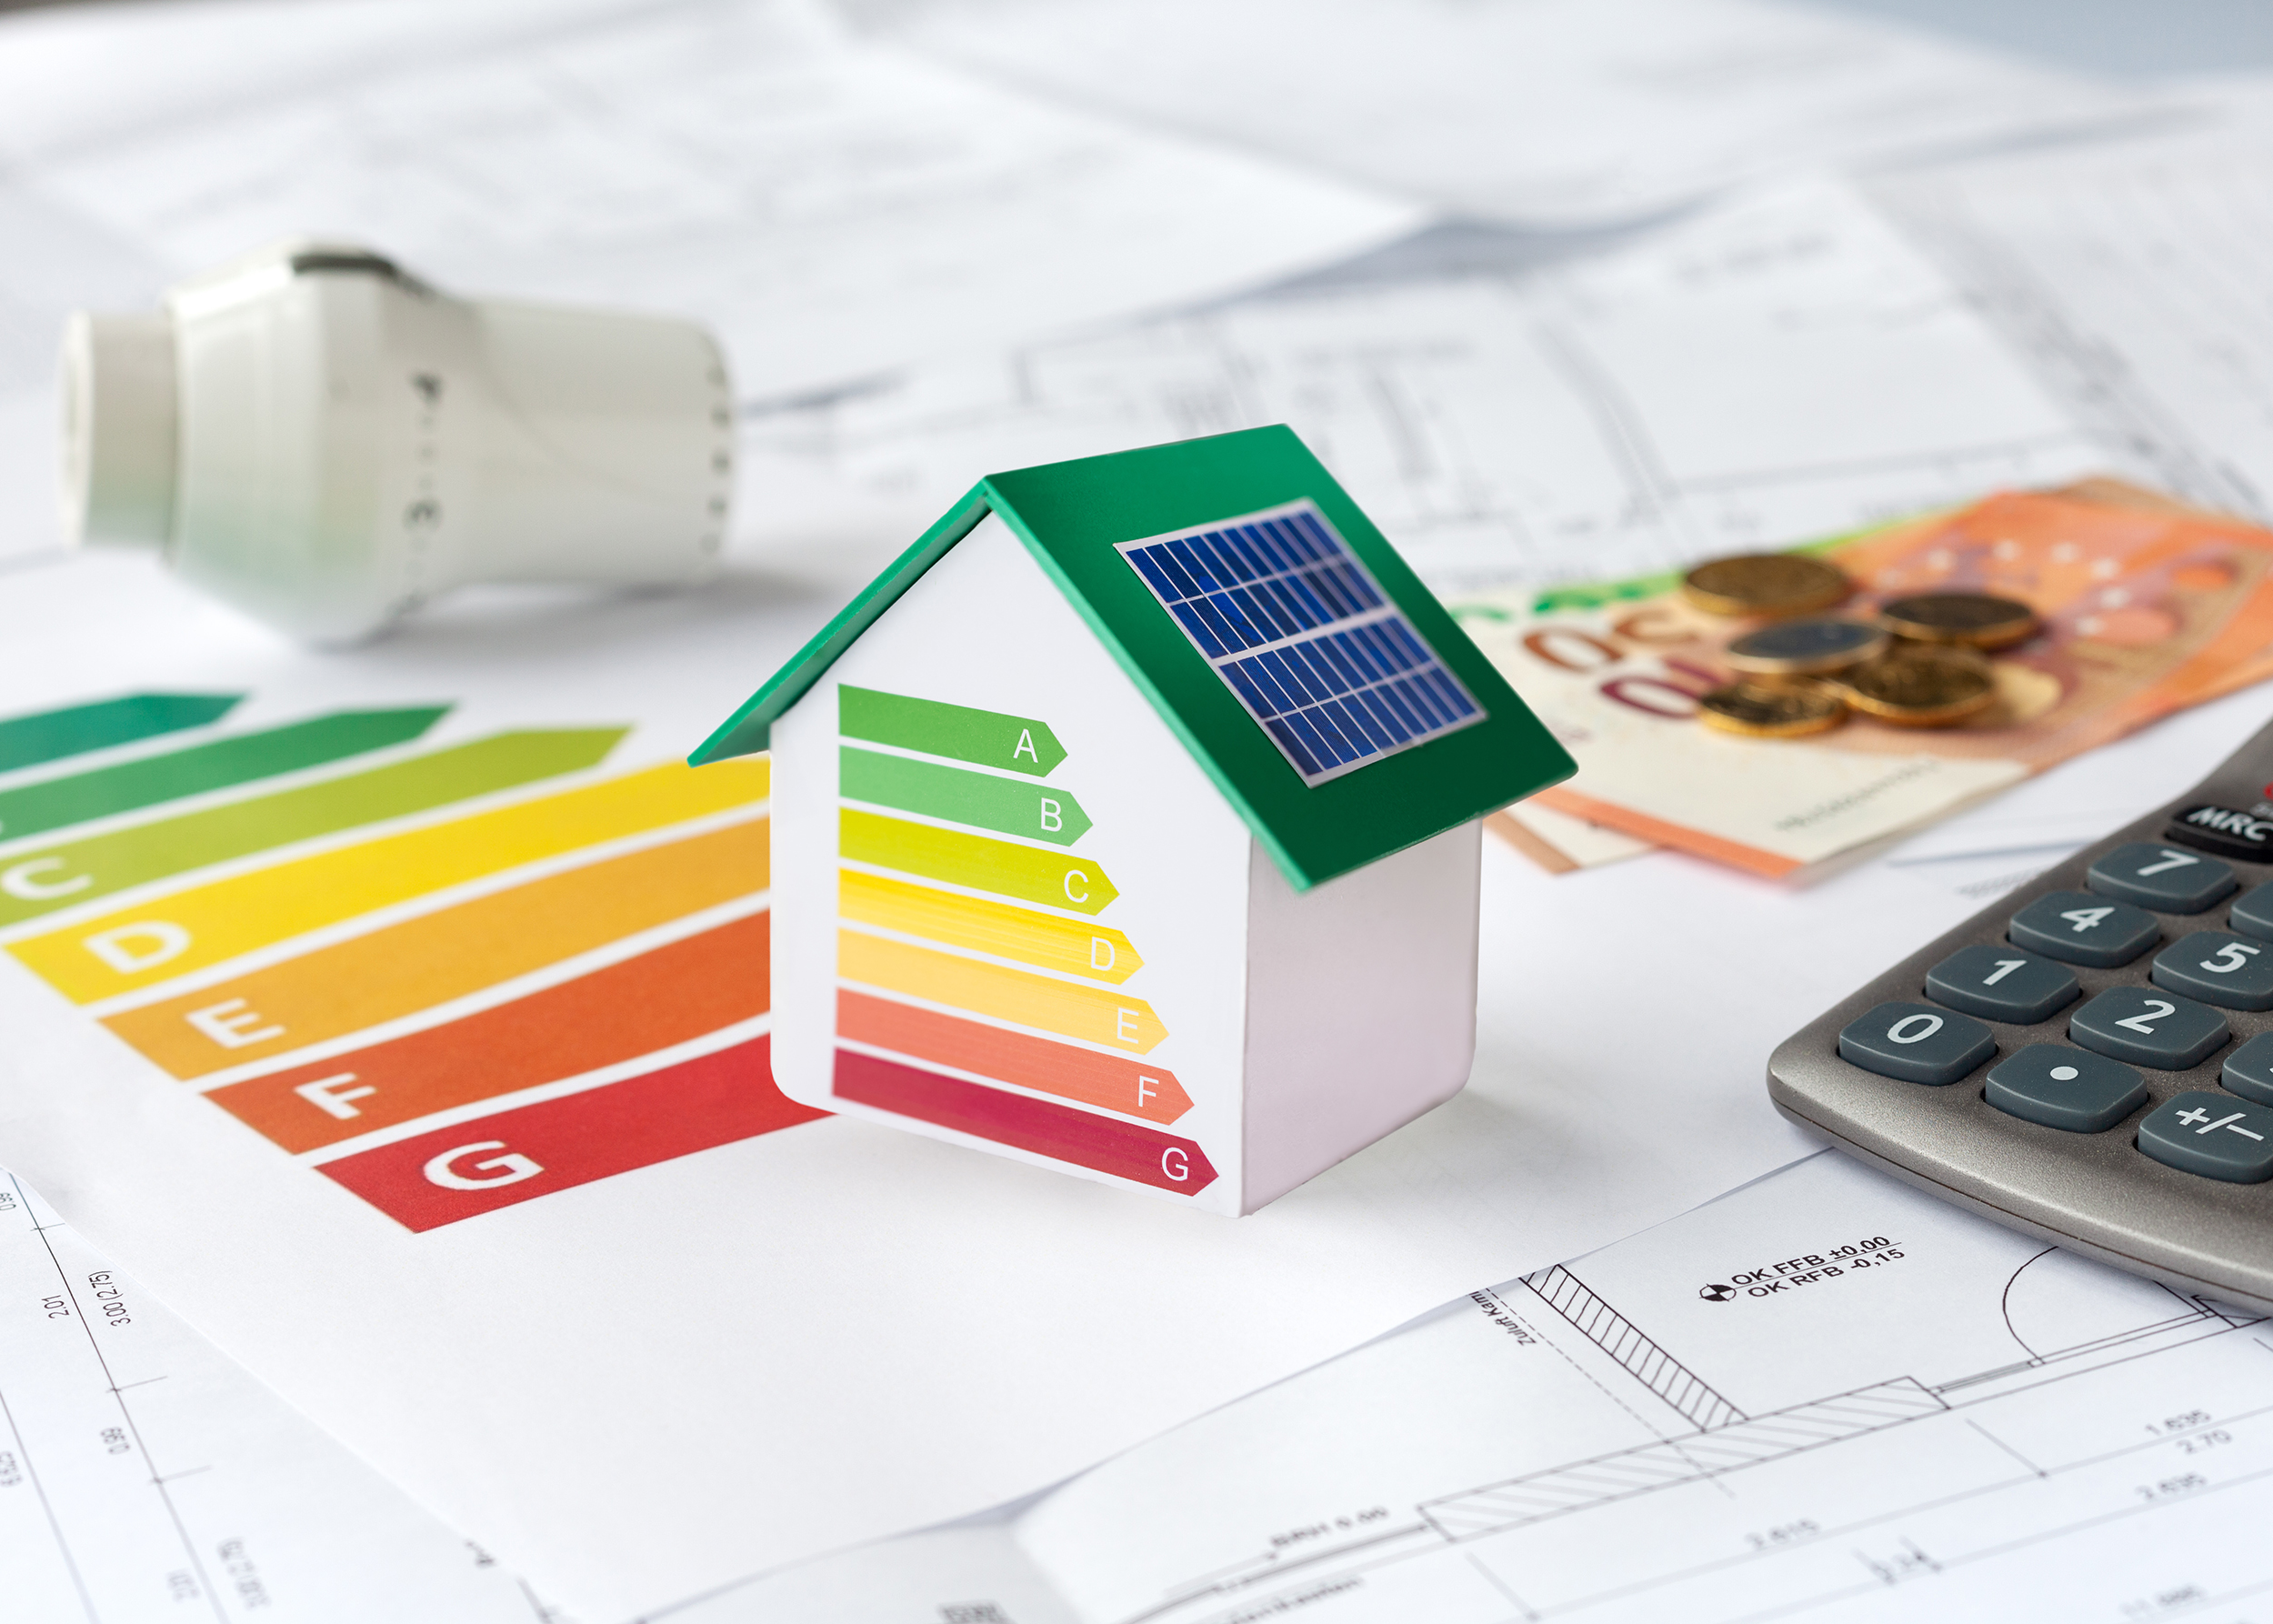 Energieberatung mit Bauplänen, Rechner, Geld und Thermostat - Beantragung von Fördermitteln zur energetischen Sanierung einer Immobilie